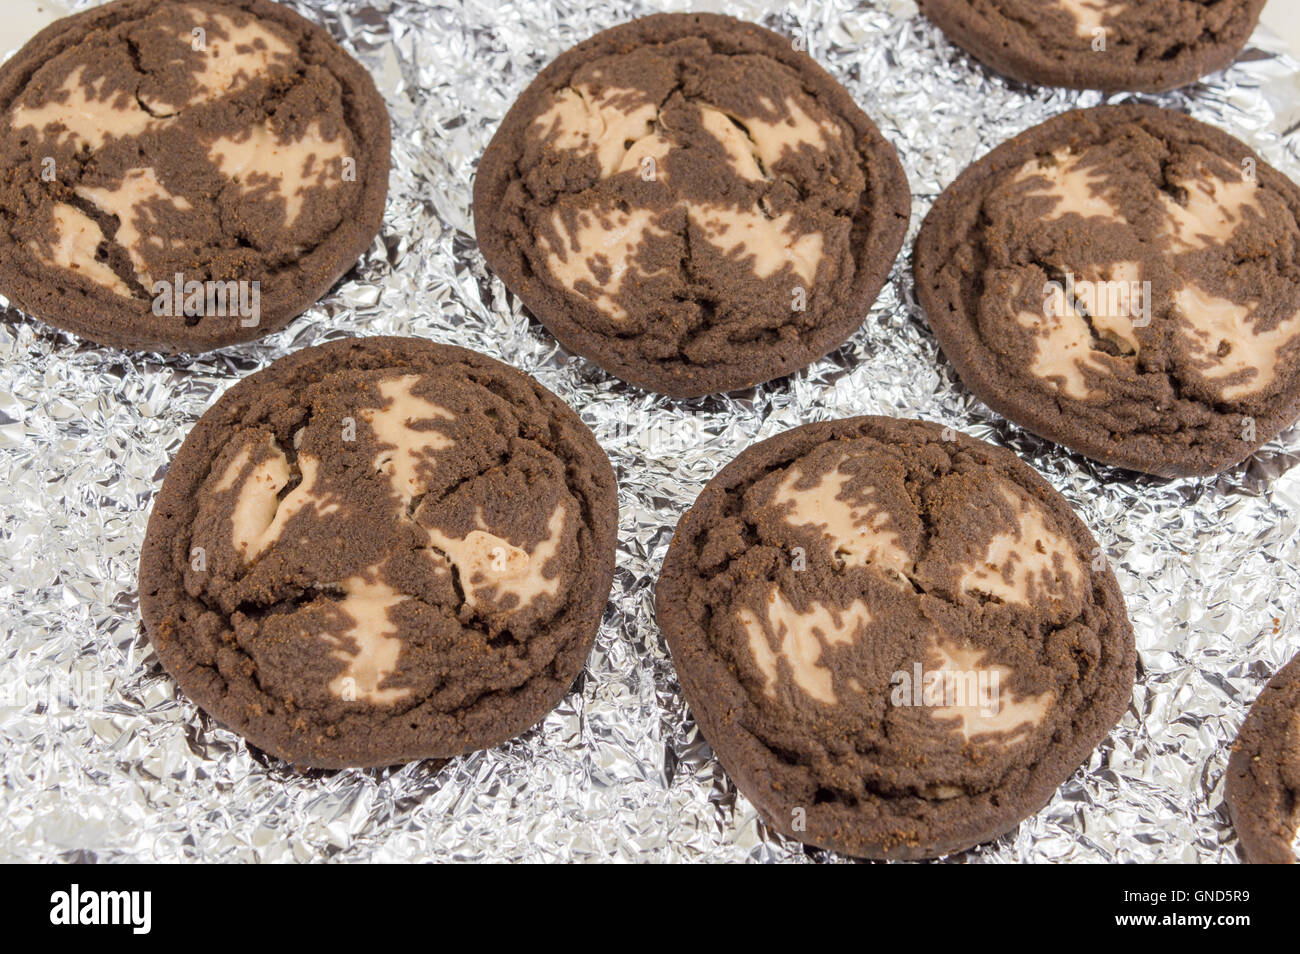 Chocolate Chip cookies brun sur du papier aluminium Banque D'Images